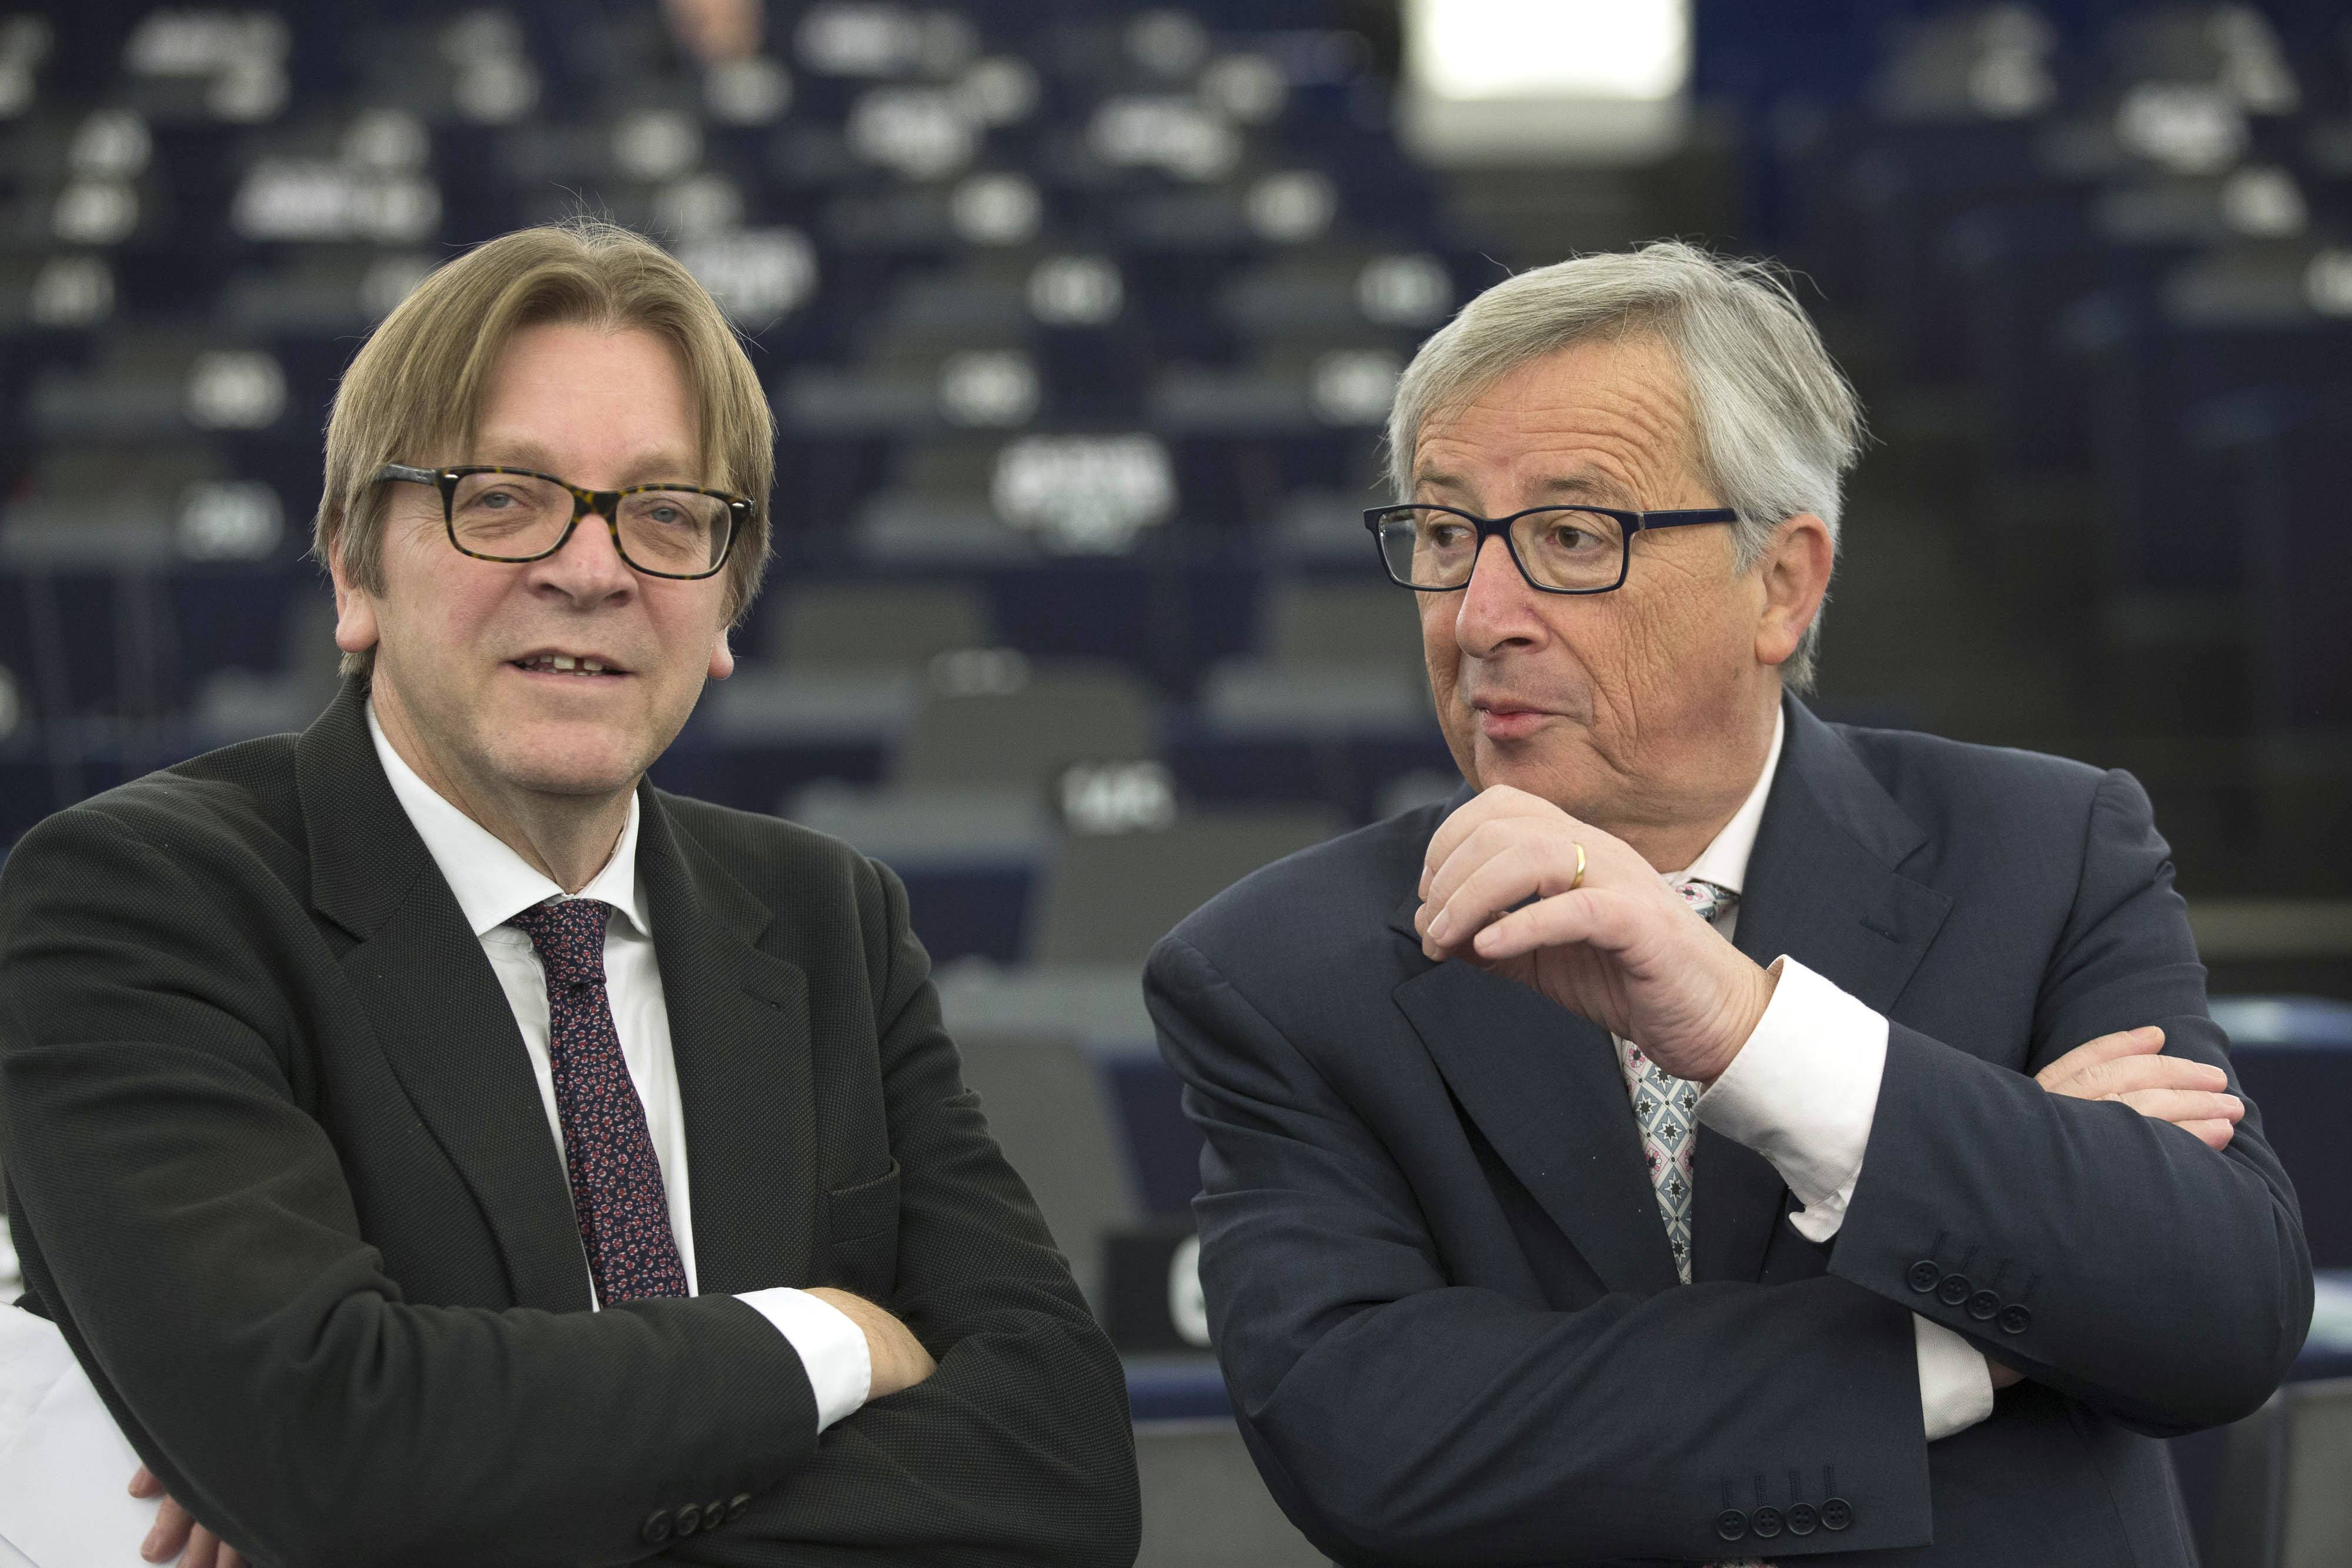 Guy Verhofstadt, Member of the EP, on the left, and Jean-Claude Juncker